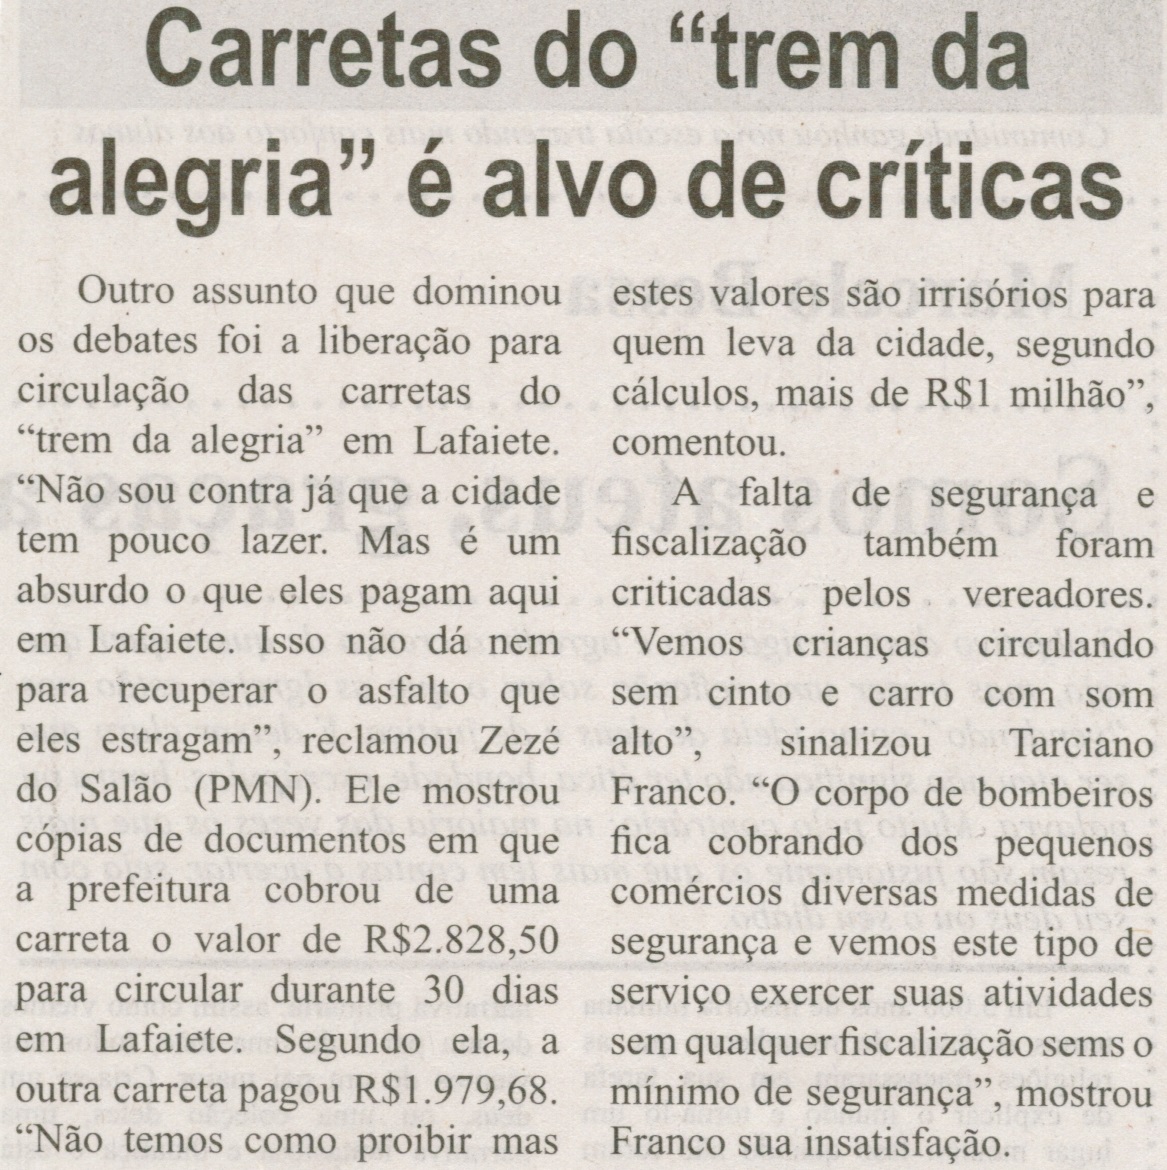 Carretas do “trem da alegria” é alvo de críticas. Correio de Minas, Conselheiro Lafaiete, 18 dez. 2014, p. 5.